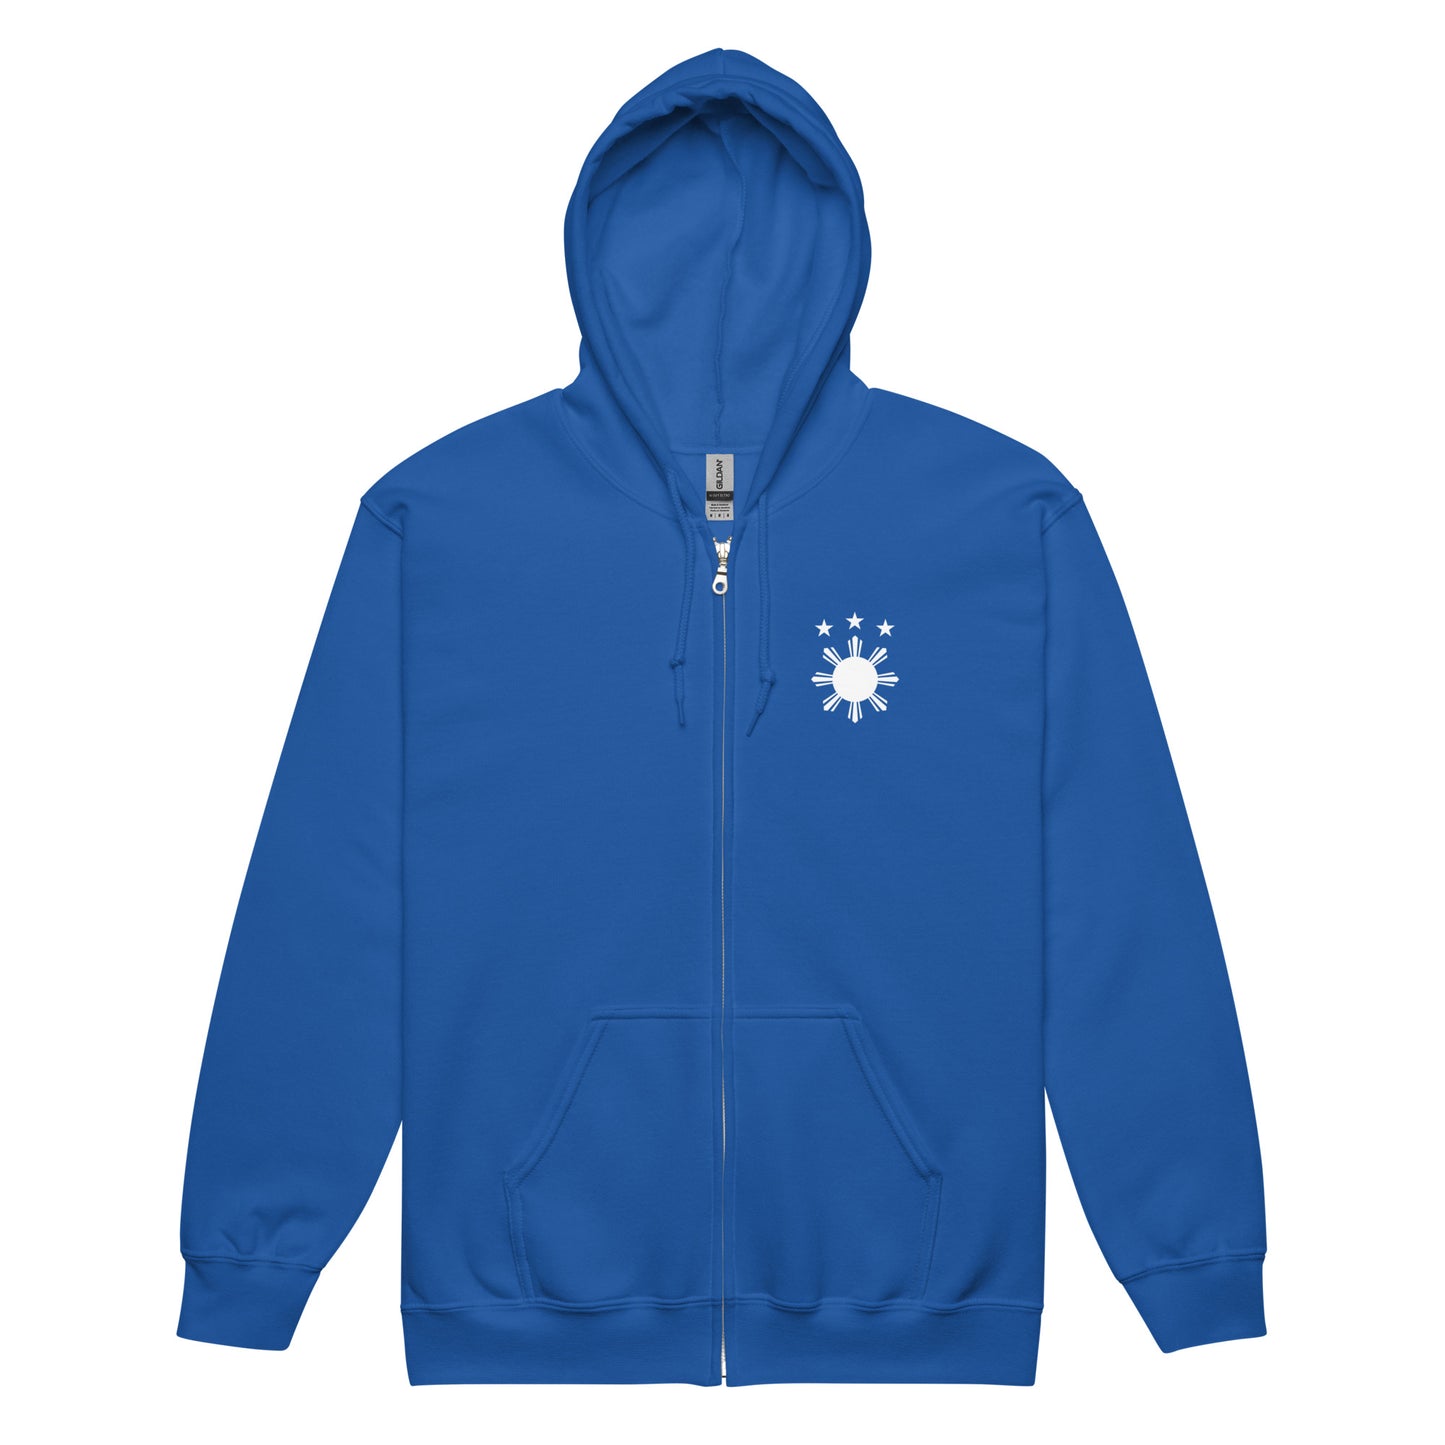 Tropical Warrior heavy blend ZIP-hoodie | Royal Blue